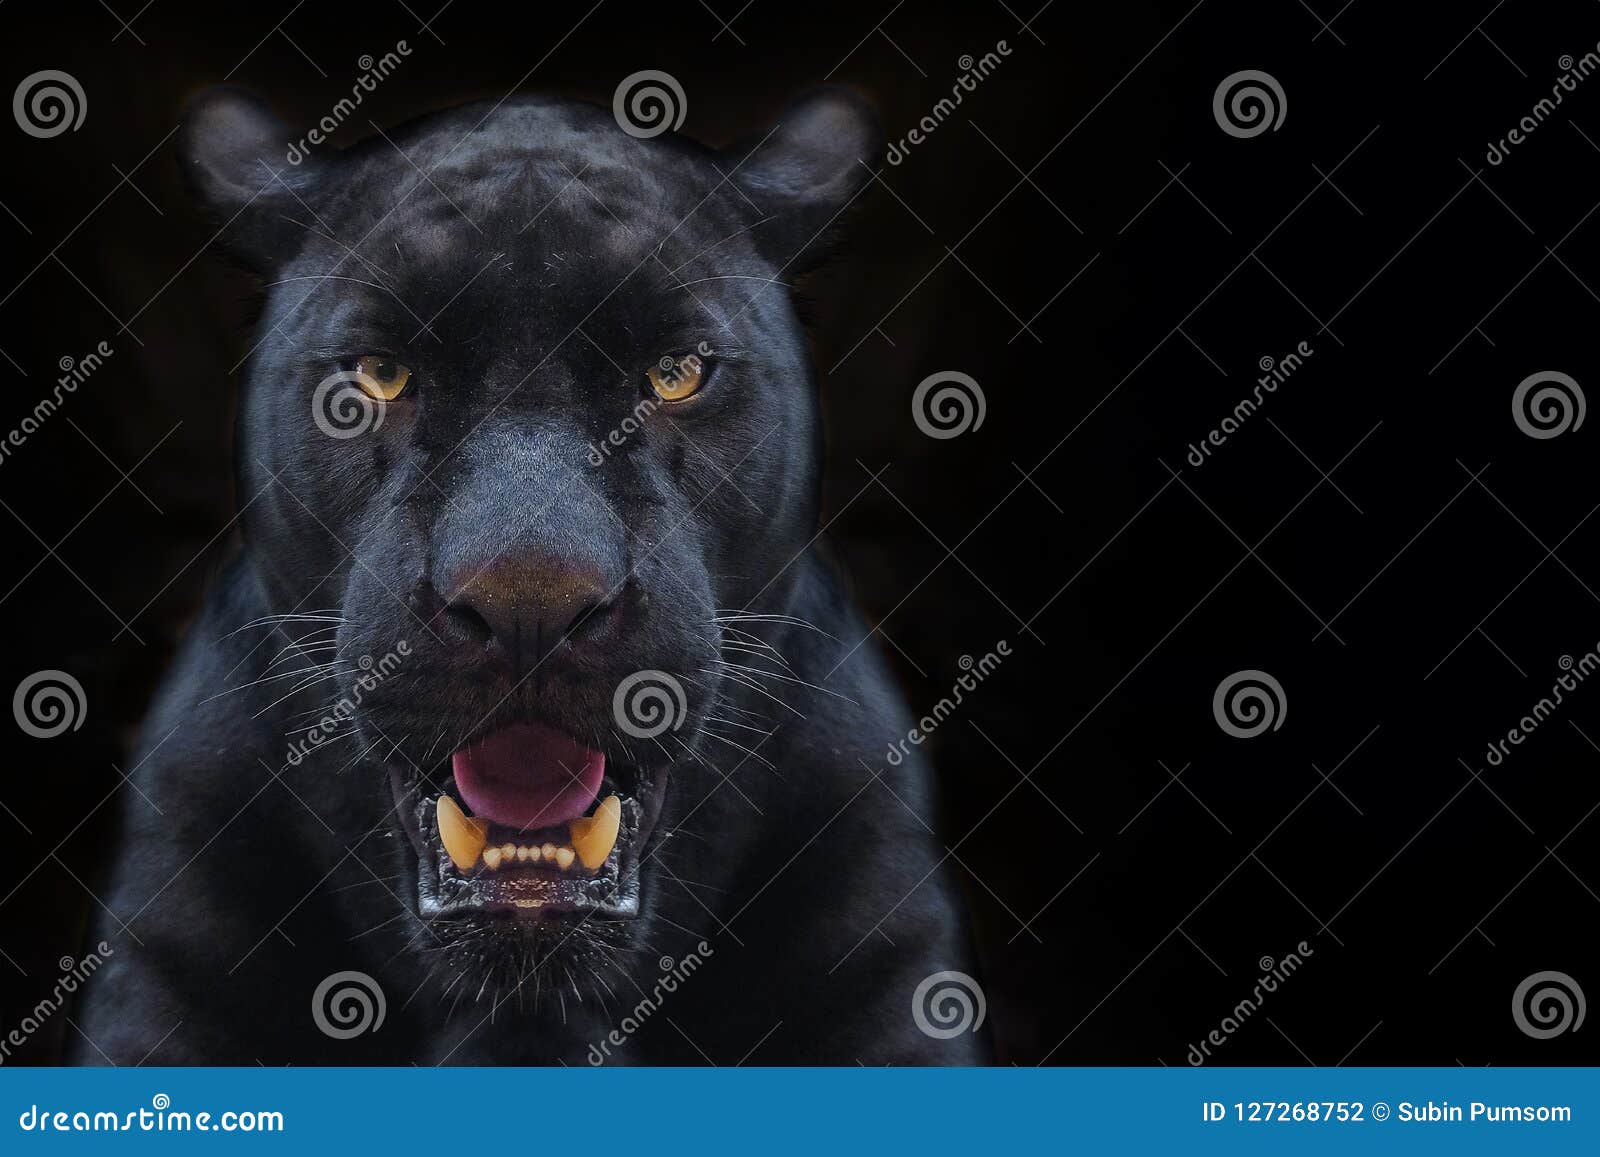 Unduh 75 Background Black Panther Paling Keren